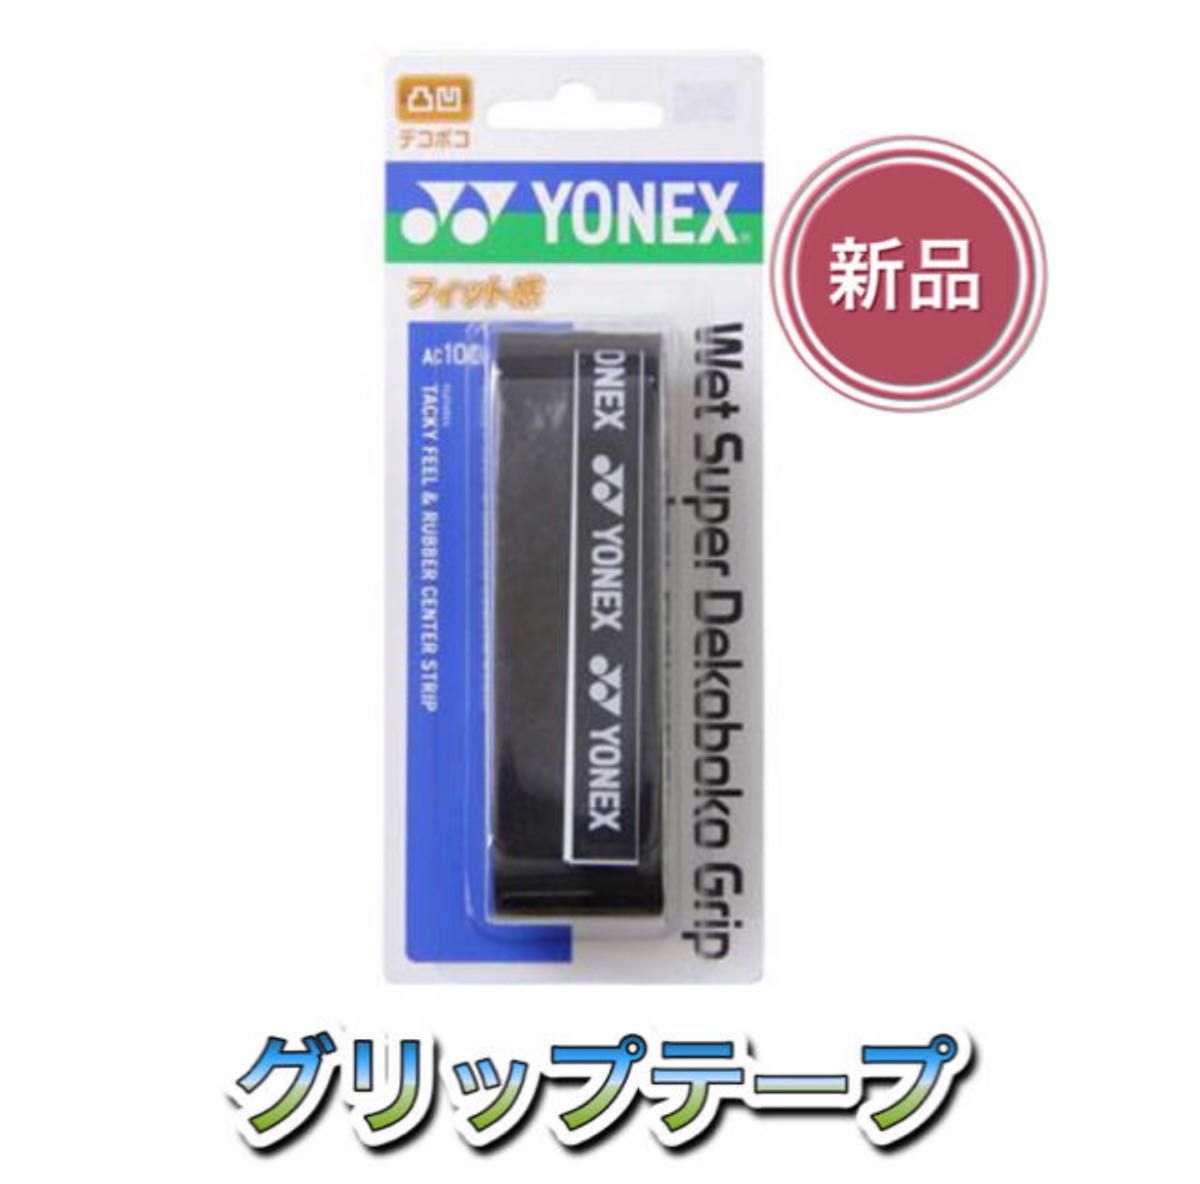 YONEX ヨネックス ラケット グリップテープ ブラック